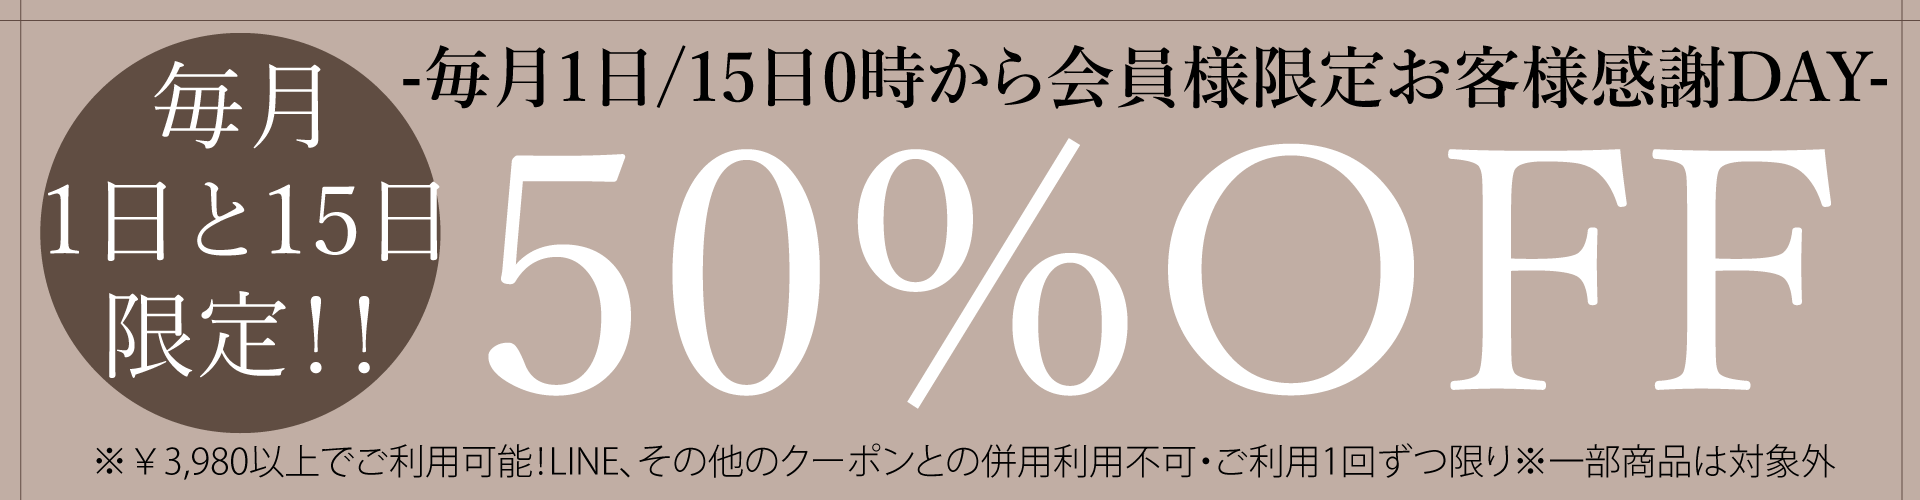 毎月1日/15日限定50%OFFクーポン発行